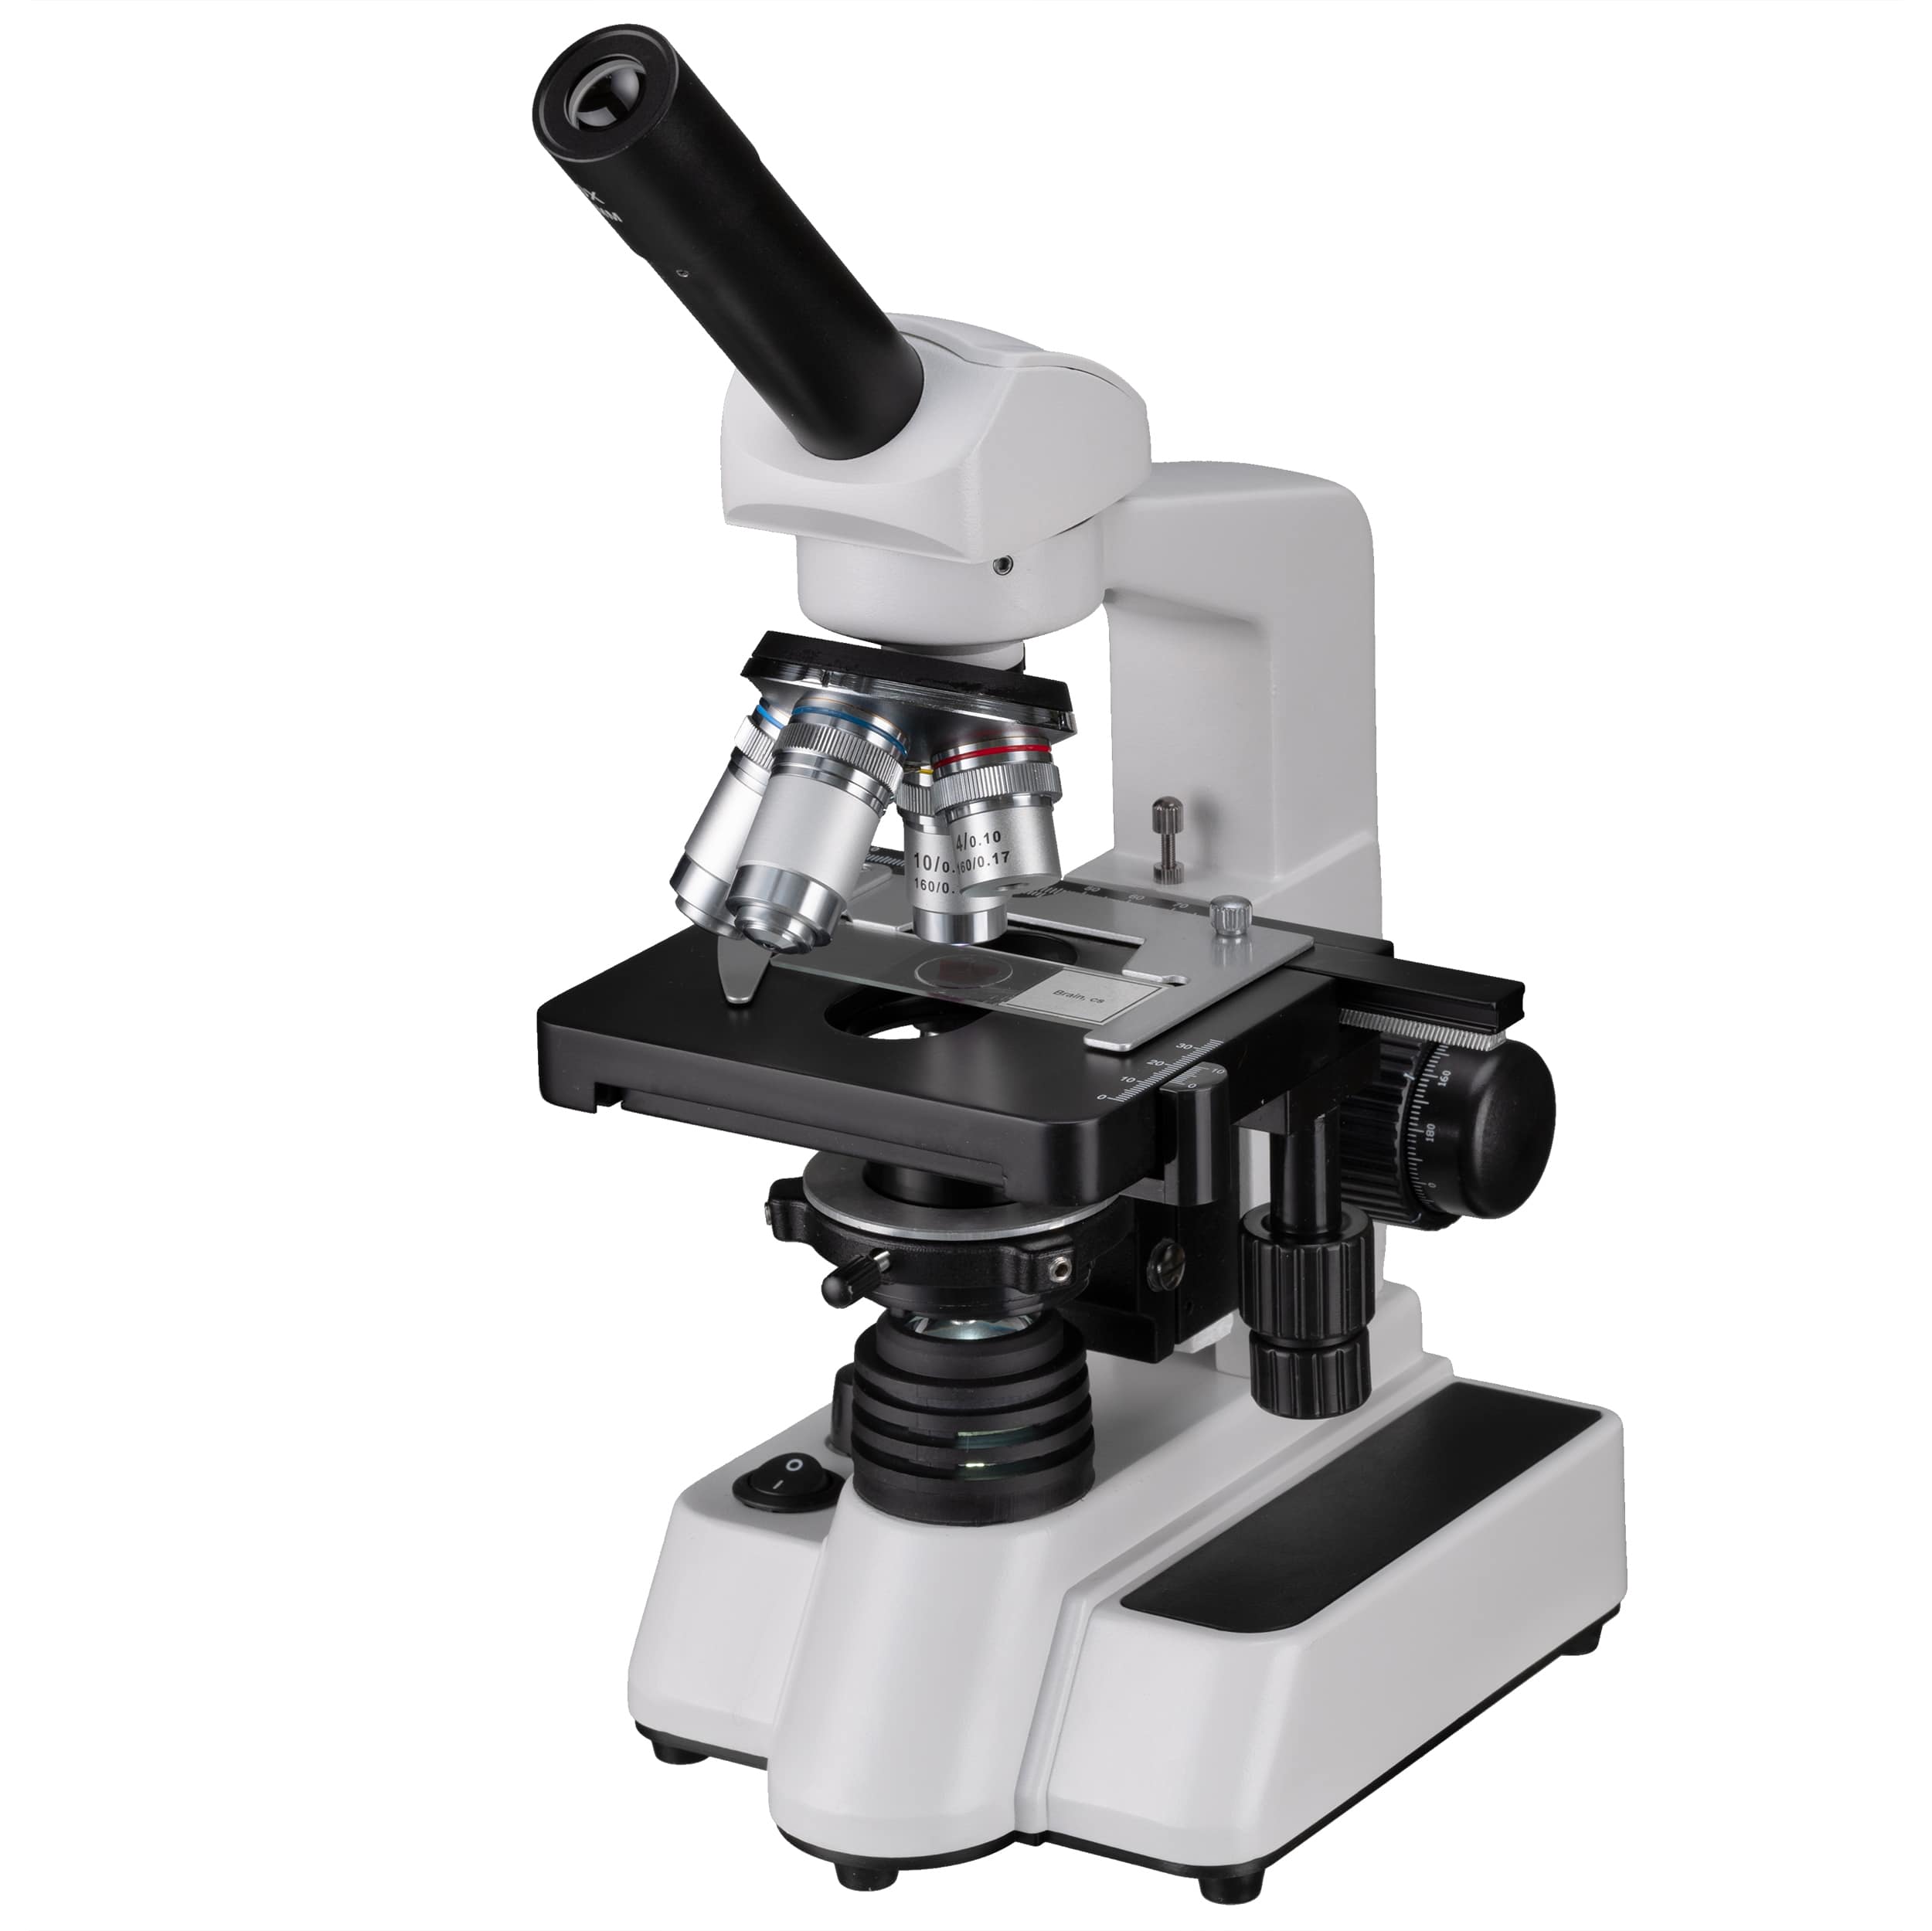  Il BRESSER Erudit DLX è un ottimo microscopio per la scuola e l'università. Grazie agli obiettivi DIN offre immagini di ottima qualità. 